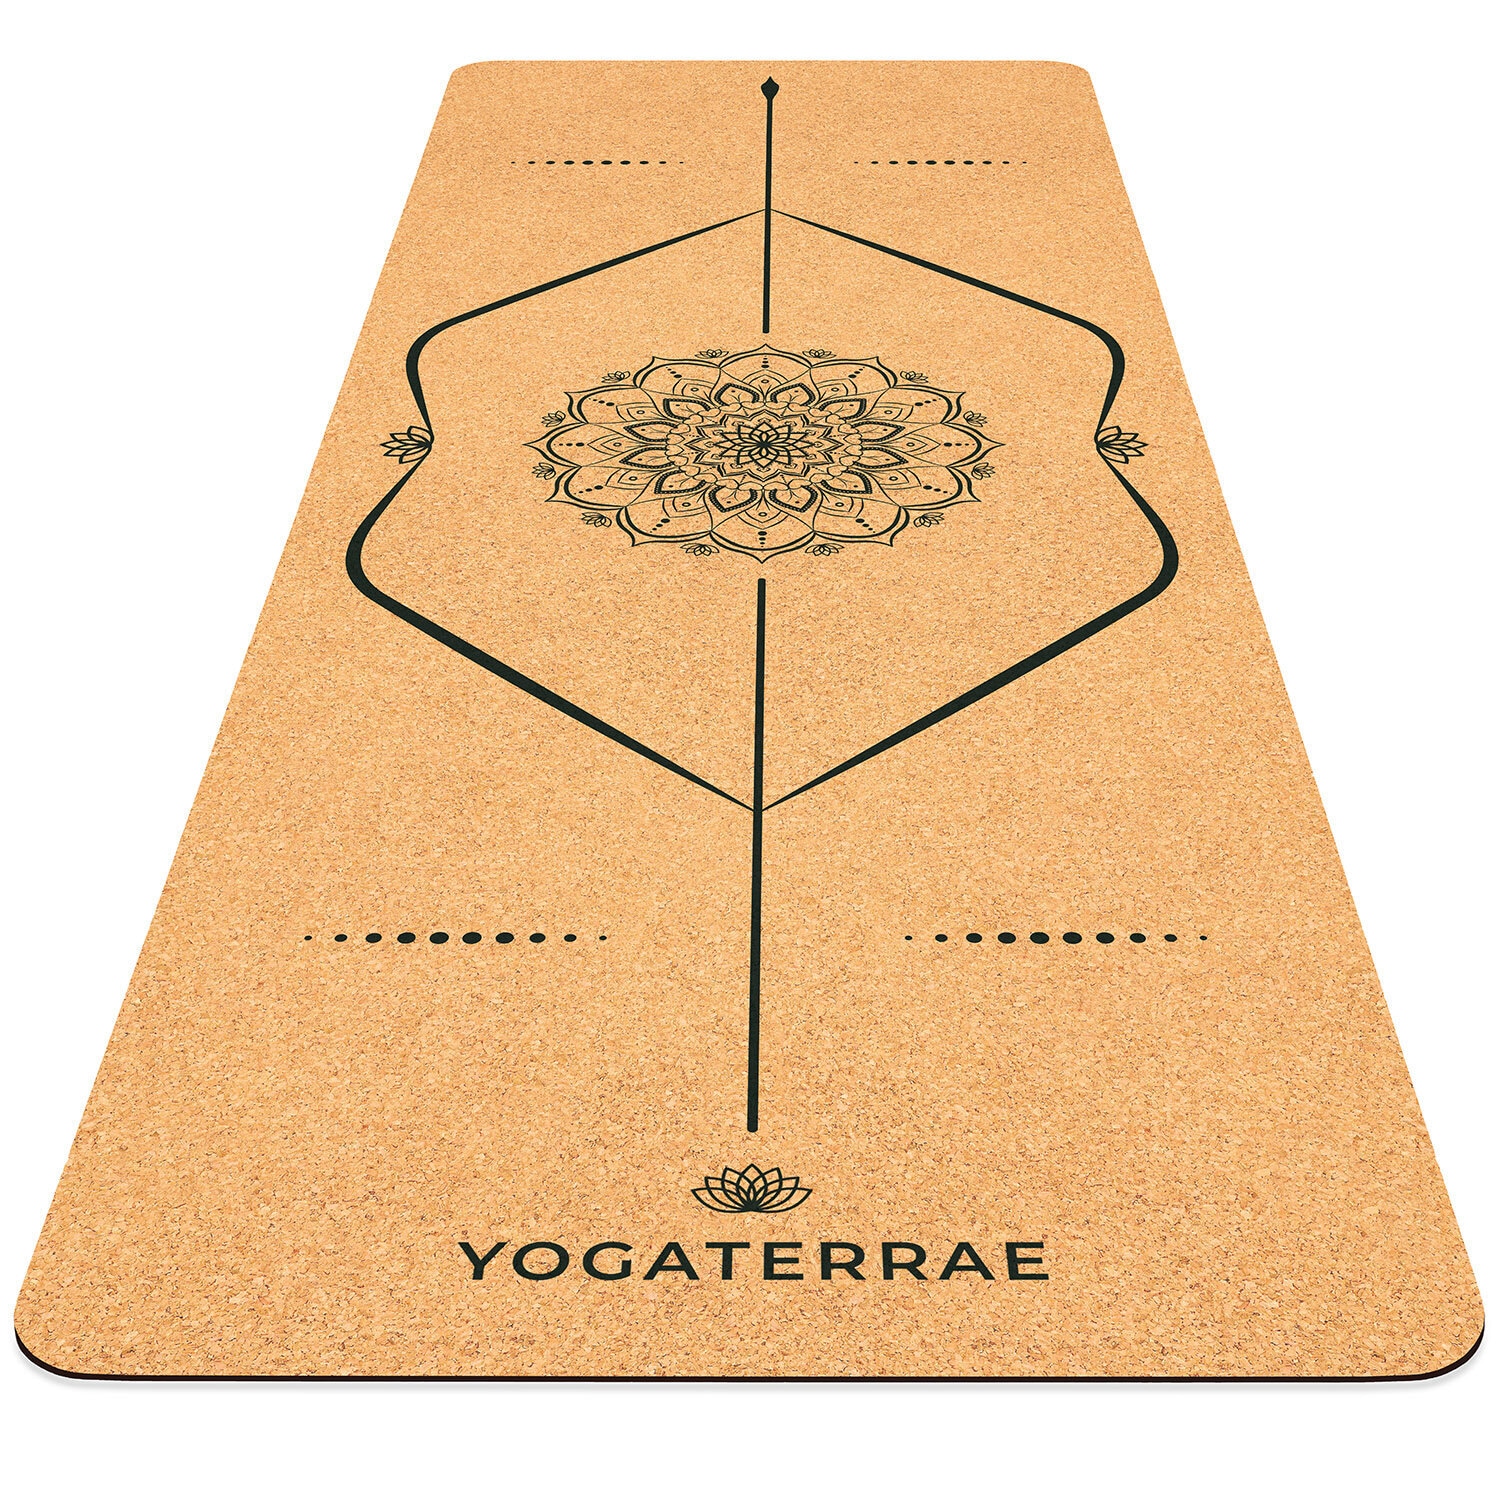 Tapis de yoga liège et caoutchouc naturel 175 x 64 cm, ép 4 mm